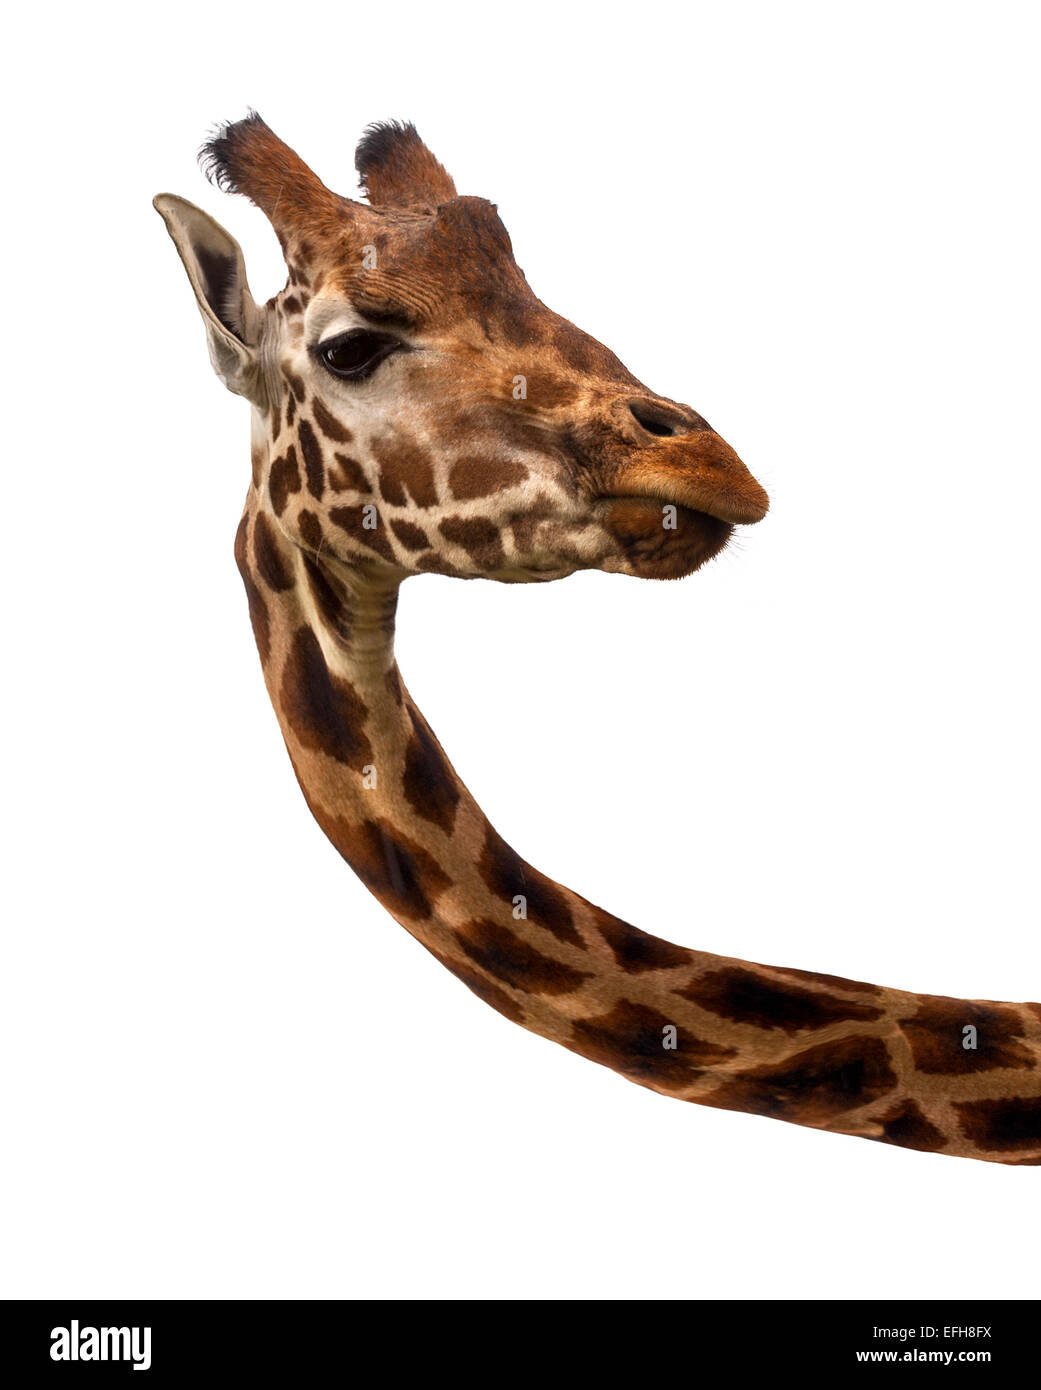 Cabeza y cuello jirafa contra el fondo blanco. Foto de stock